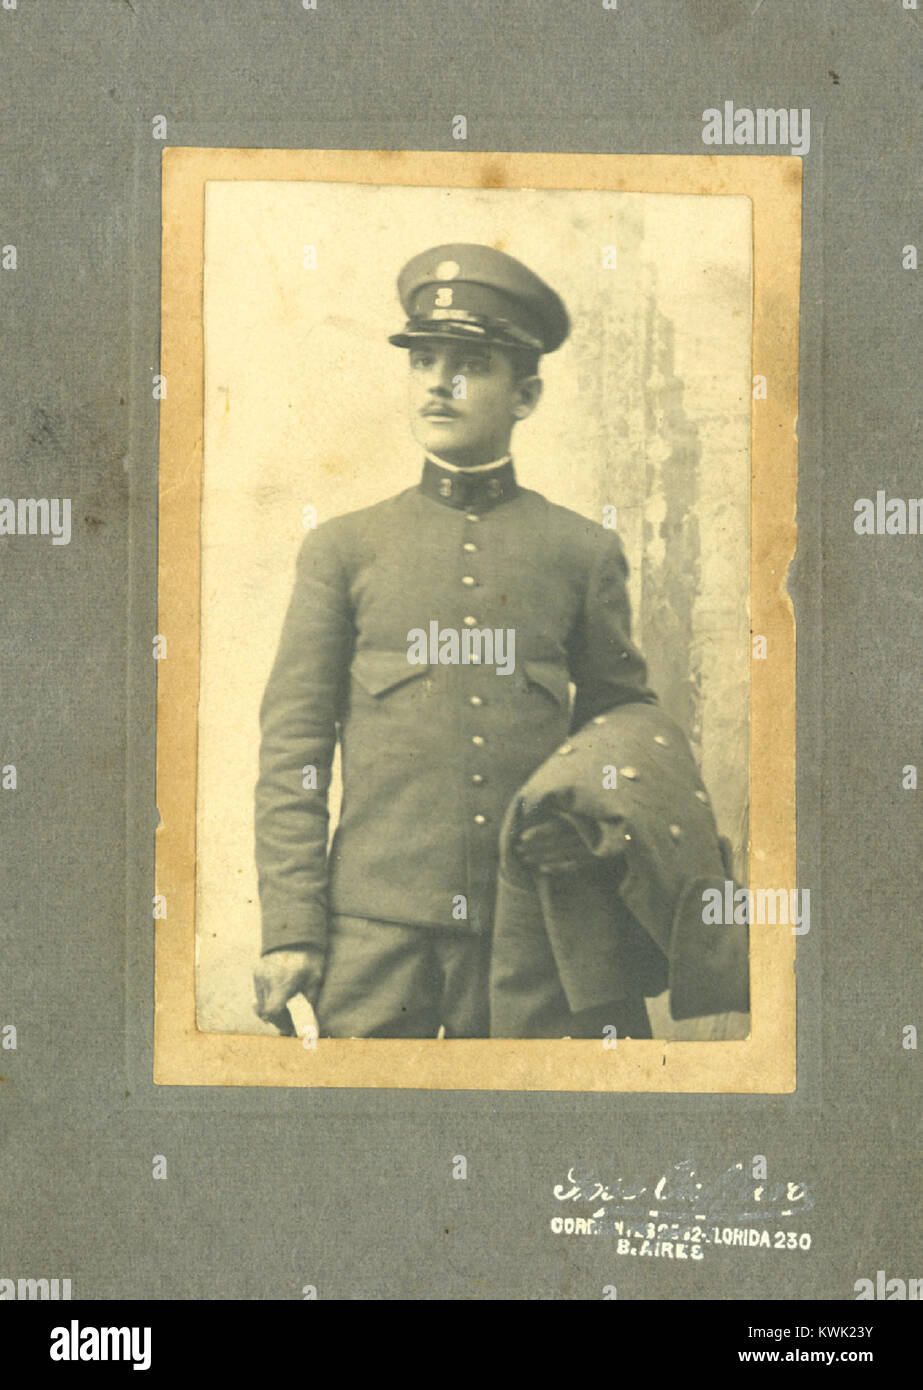 Juan De Salvo -luego mas conocido como Juan Desalvo- Buenos Aires, 23-6-1882 - 3-8-1949. Foto hacia 1902 como soldado del Regimiento 3 de Infantería Stock Photo